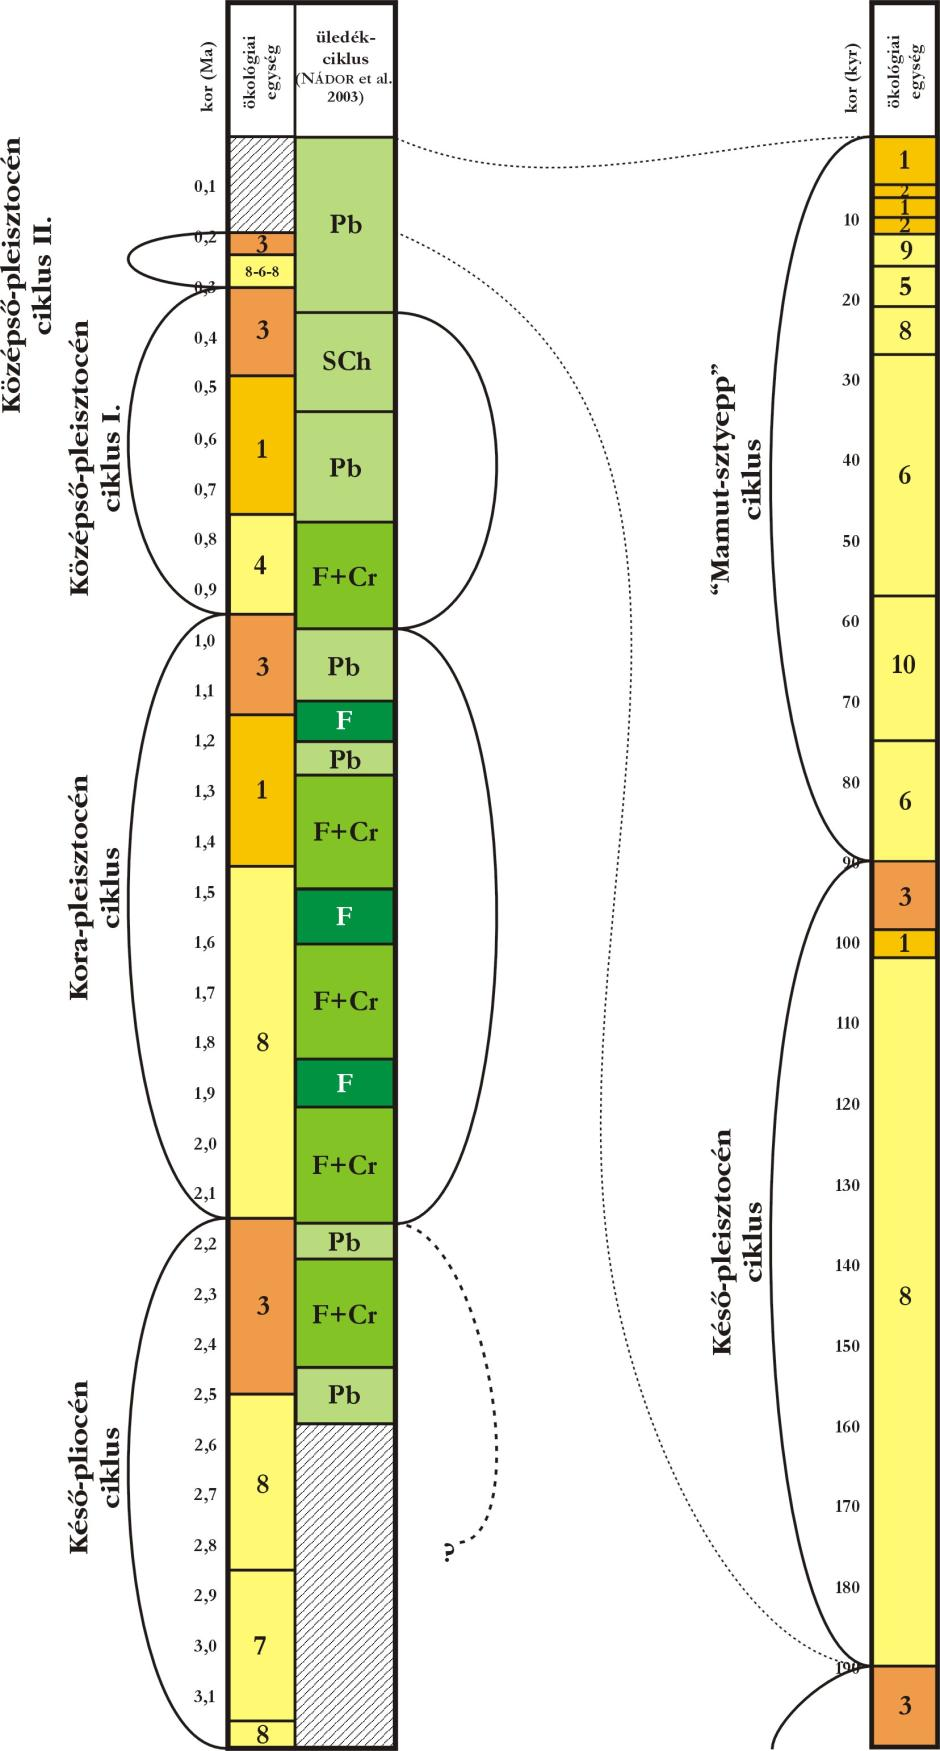 10. ábra Az ökológiai egységek által mutatott beerdősülési ciklusok és a Vésztő 1-es számú fúrás üledékes ciklusainak (NÁDOR et al., 2003) kapcsolata.